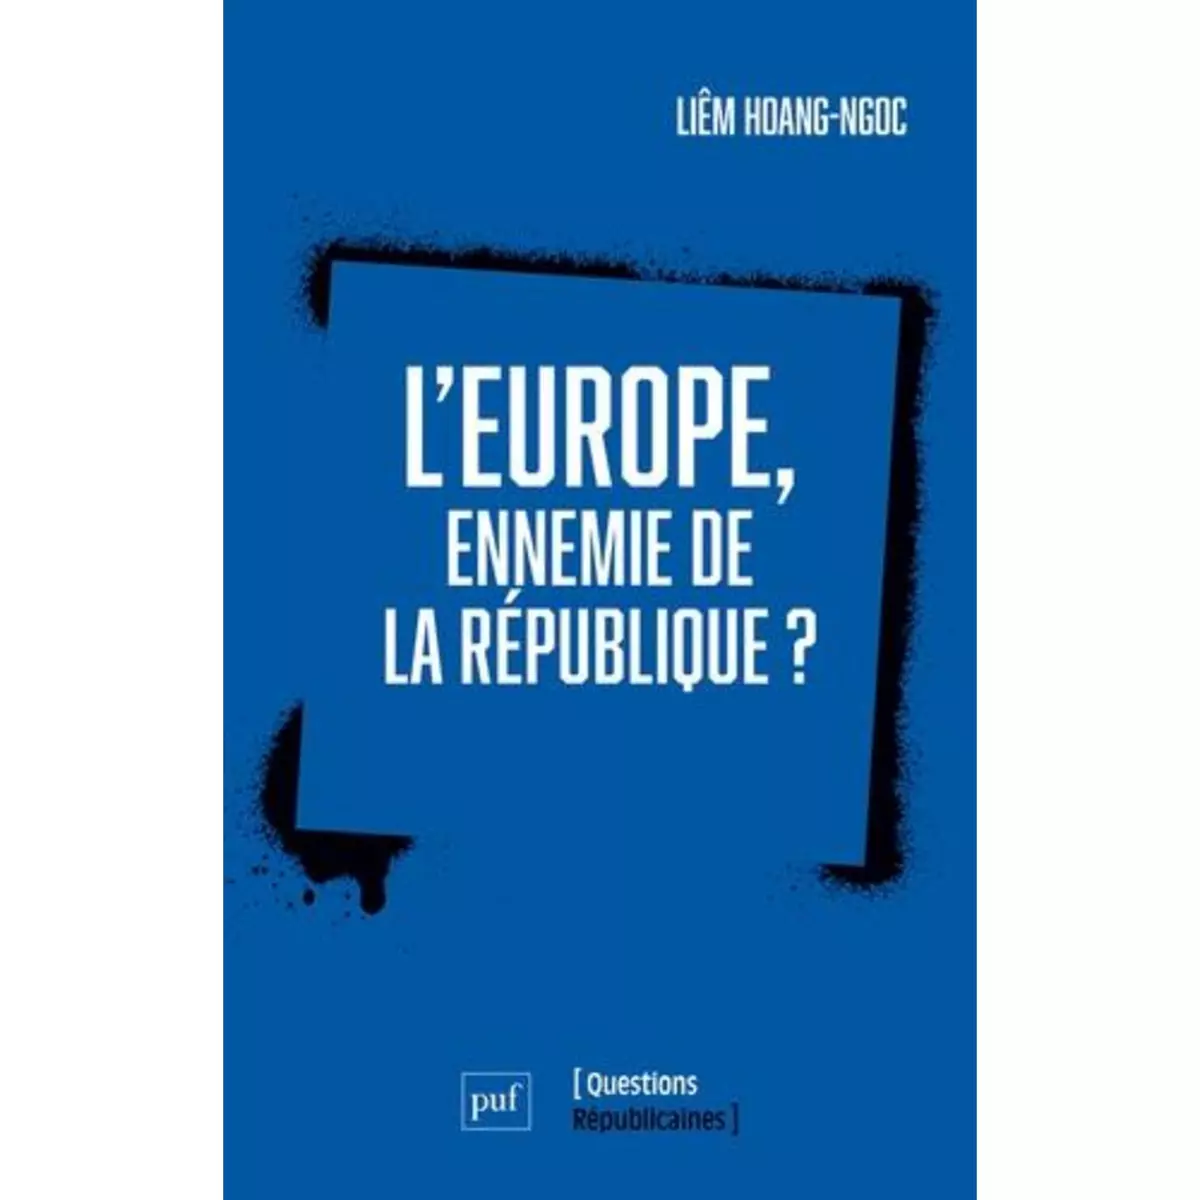  L'EUROPE, ENNEMIE DE LA REPUBLIQUE ?, Hoang-Ngoc Liêm